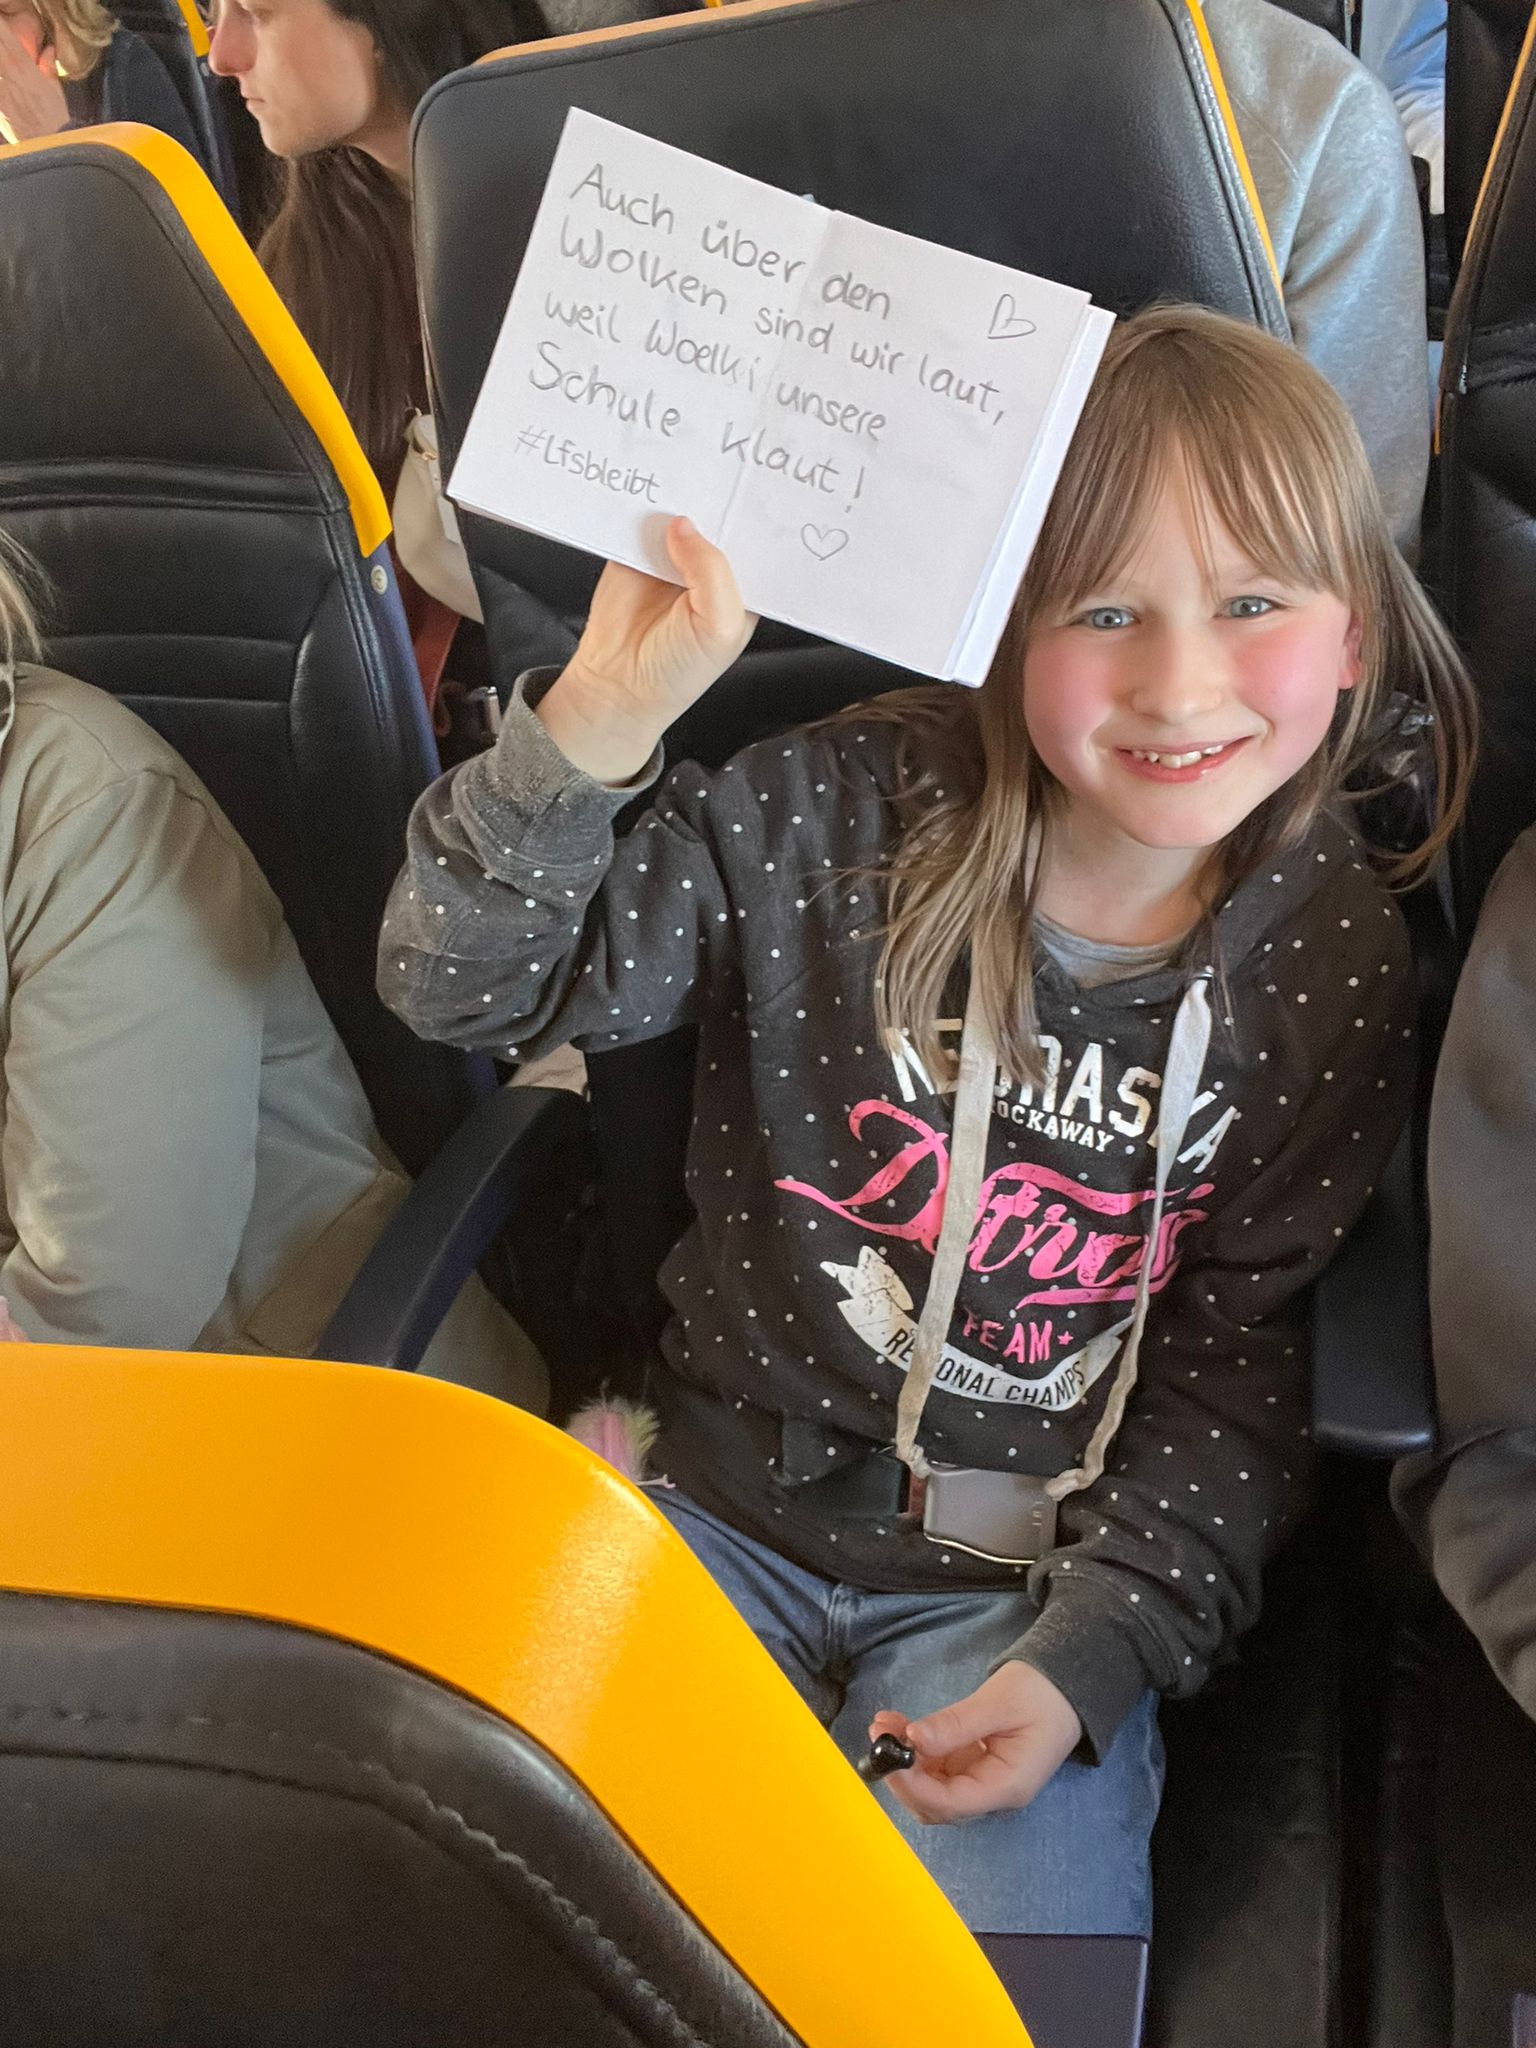 Mädchen mit Plakat "Auch über den Wolken sind wir laut, weil Woelki unsere Schule klaut!" im Flugzeug.